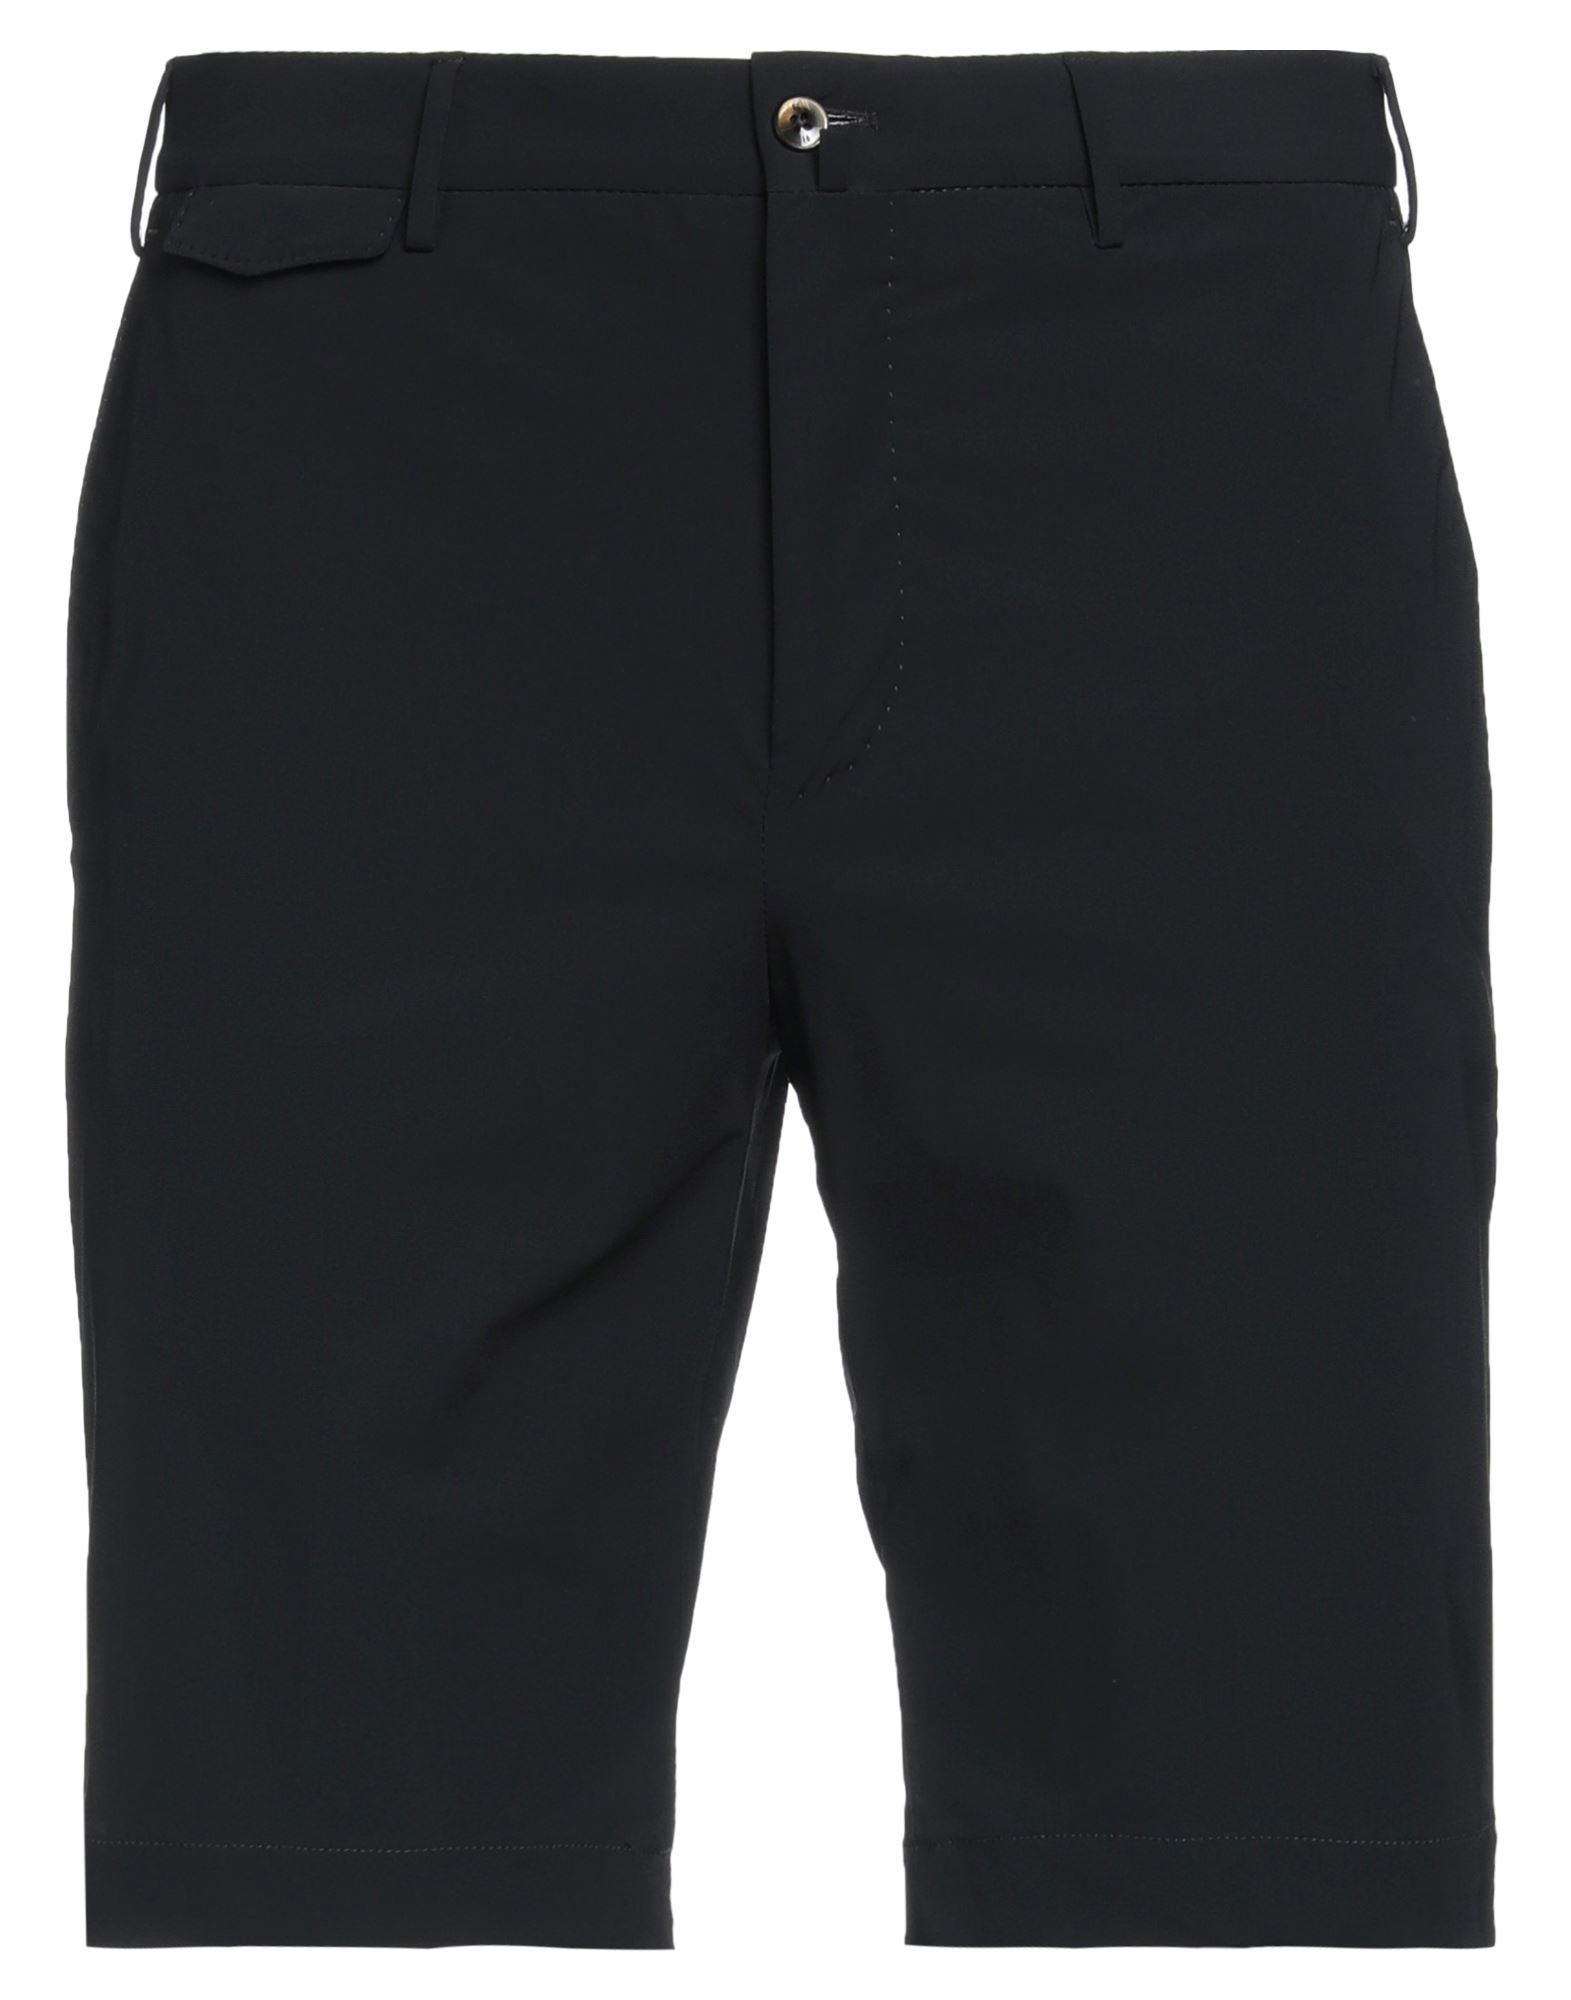 Pt Torino Man Shorts & Bermuda Shorts Black Size 28 Polyamide, Elastane